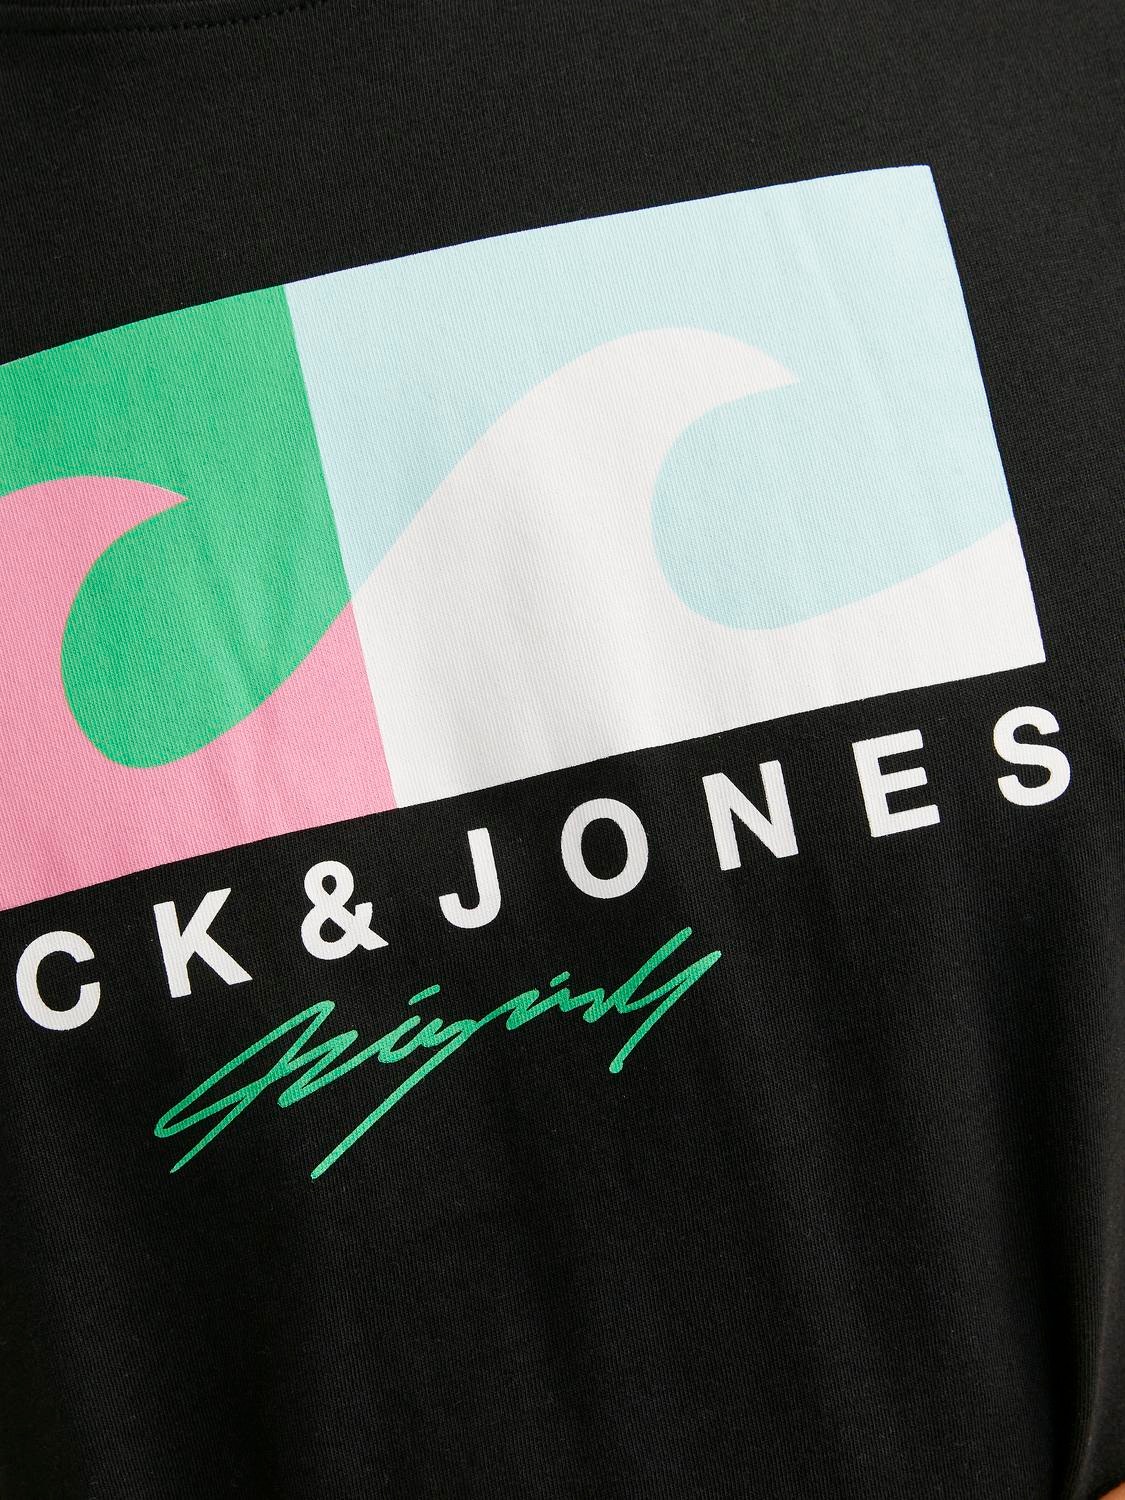 Jack & Jones Trükitud Ümmargune kaelus T-särk -Black - 12255038